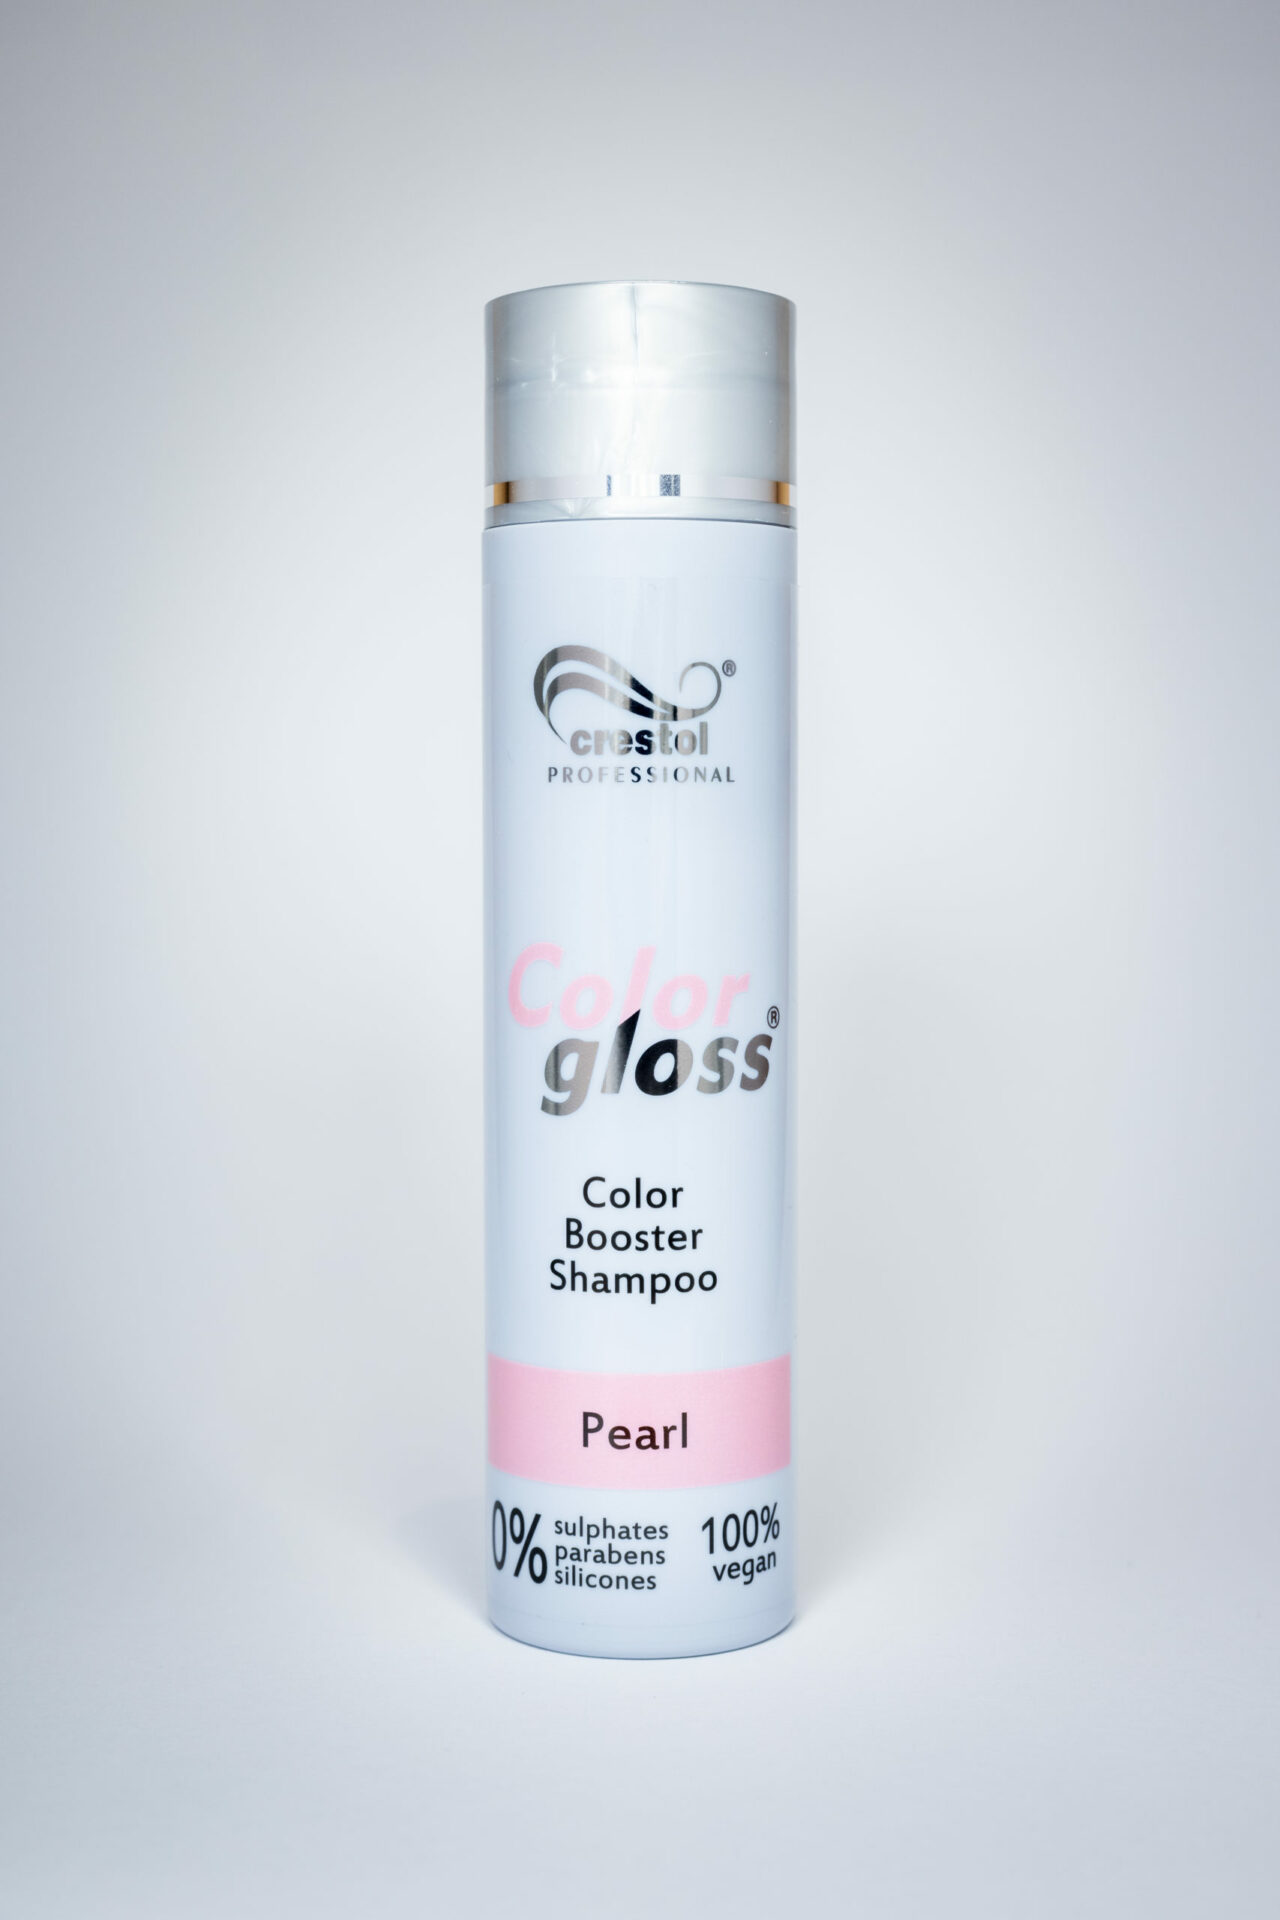 Crestol Color Booster Shampoo Pearl